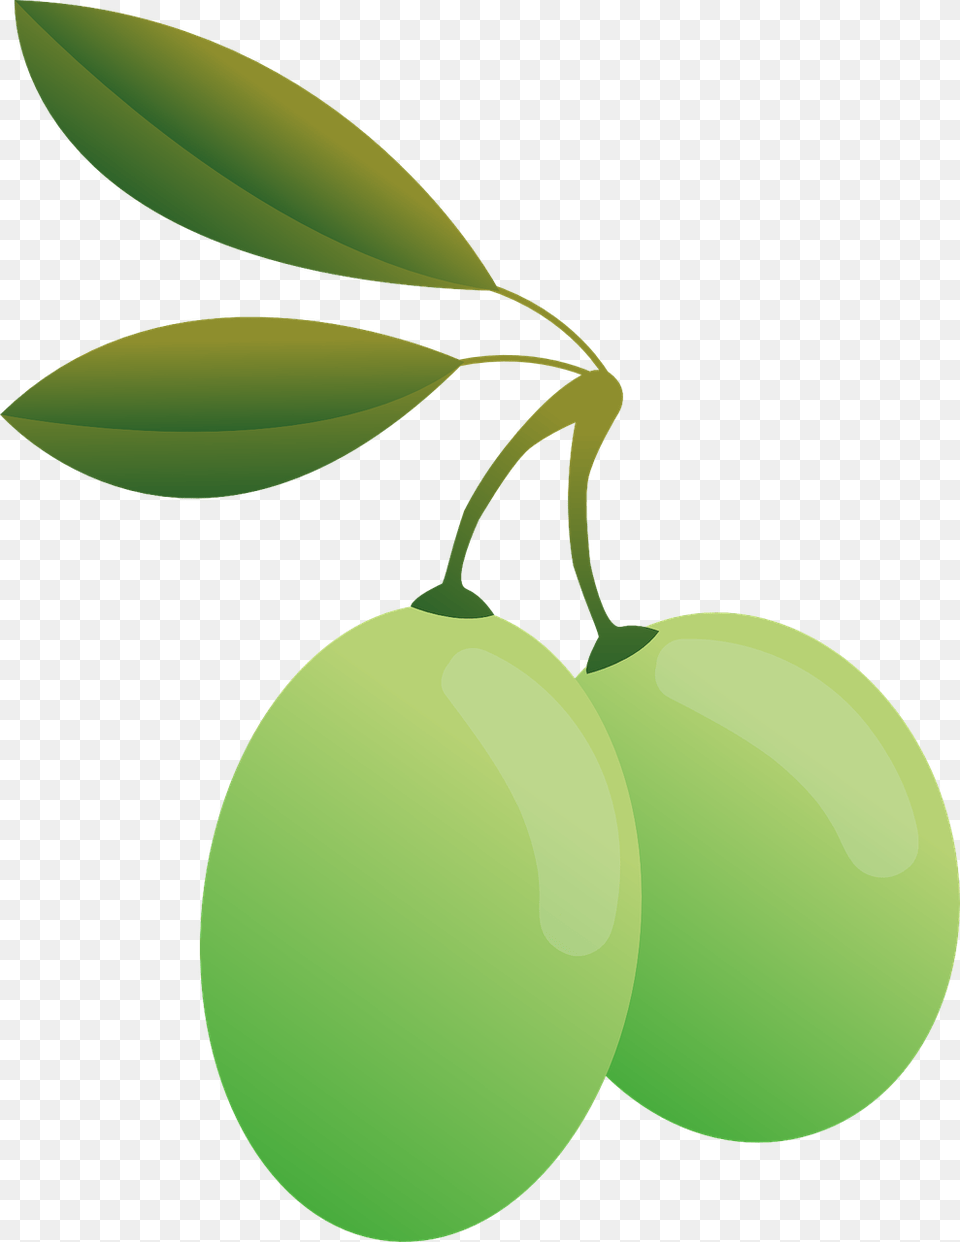 Food Olives Green Oil Olive Plants Food Green O, Fruit, Leaf, Plant, Produce Free Transparent Png